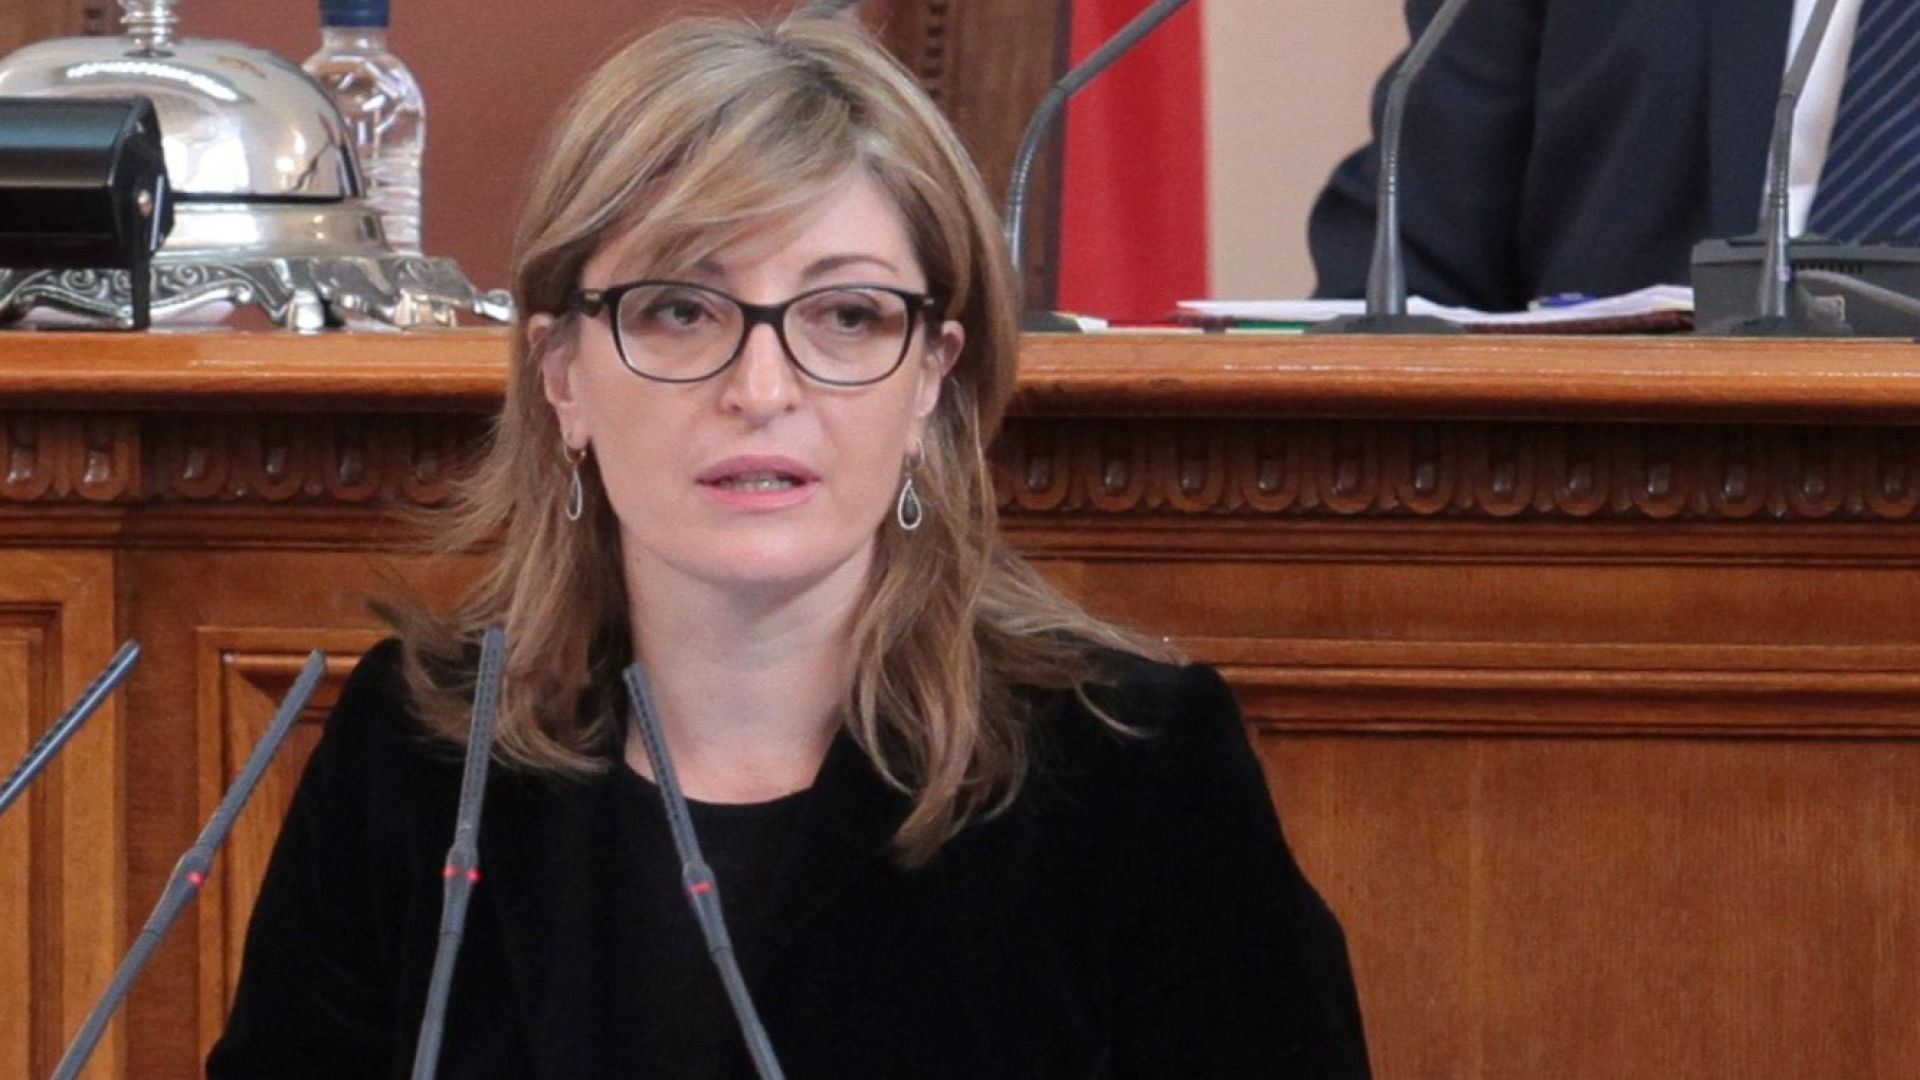 Вицепремиерът и министър на външните работи Екатерина Захариева заминава за